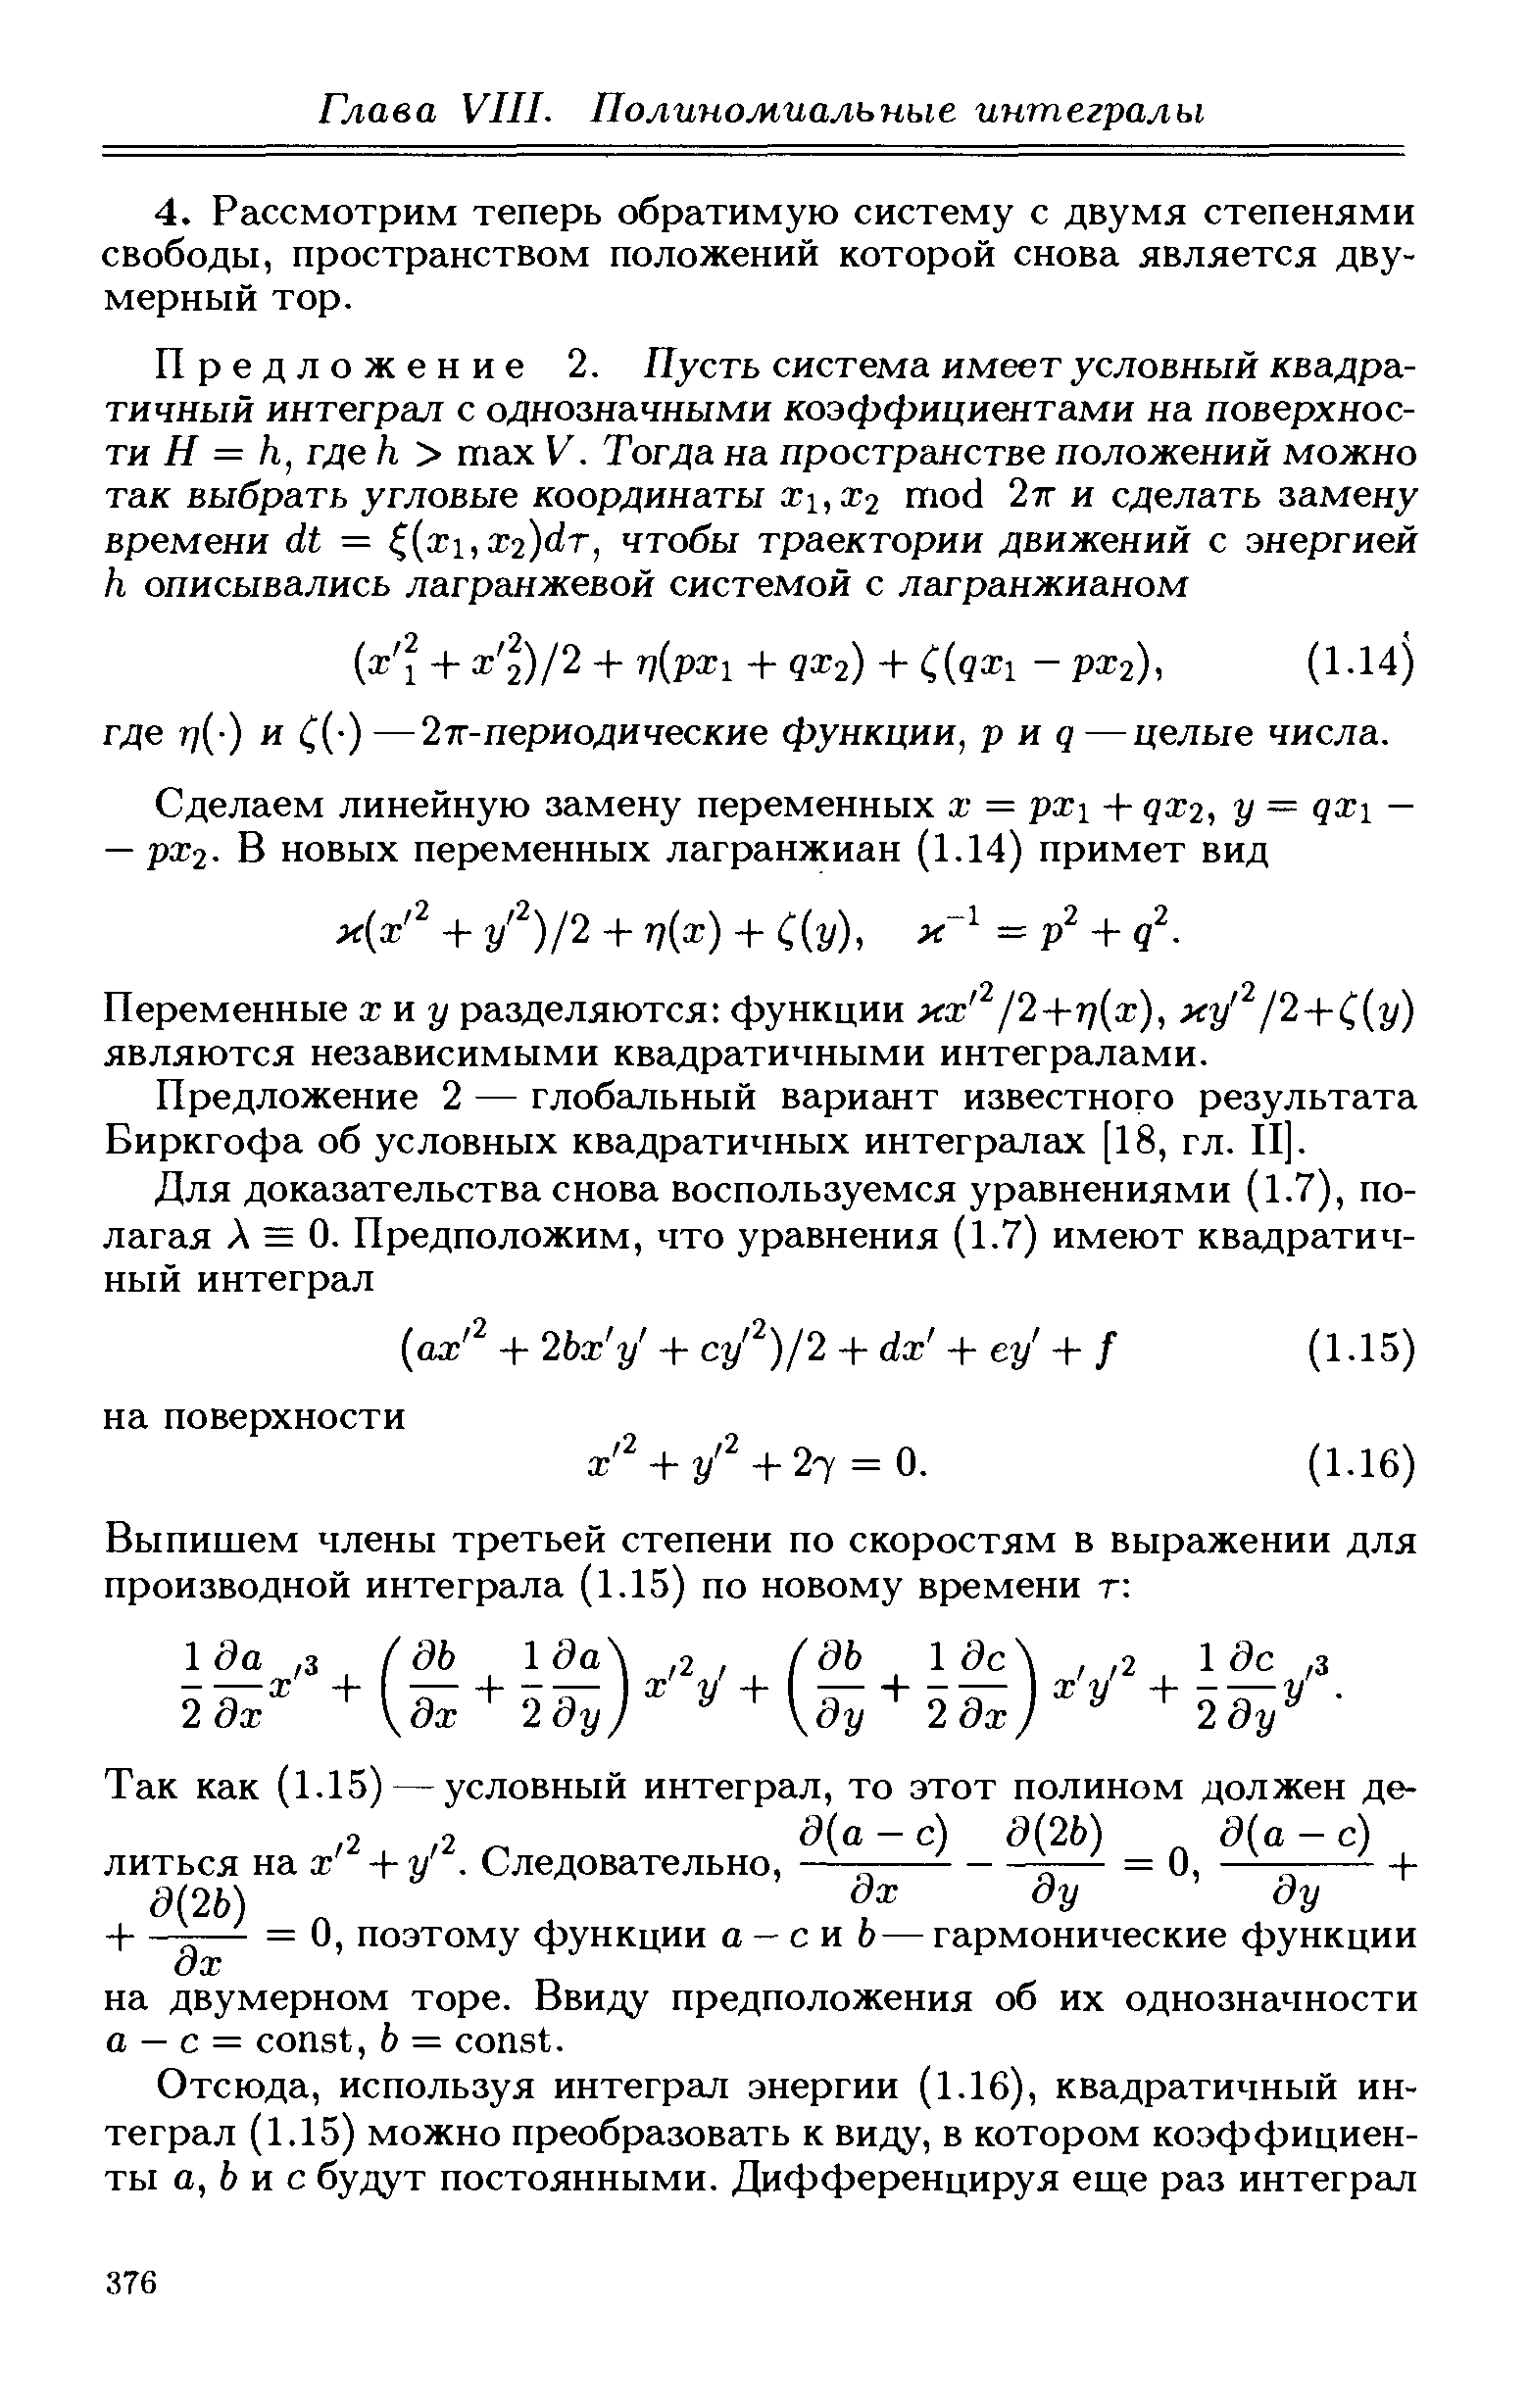 Предложение 2 — глобальный вариант известного результата Биркгофа об условных квадратичных интегралах [18, гл. П].
